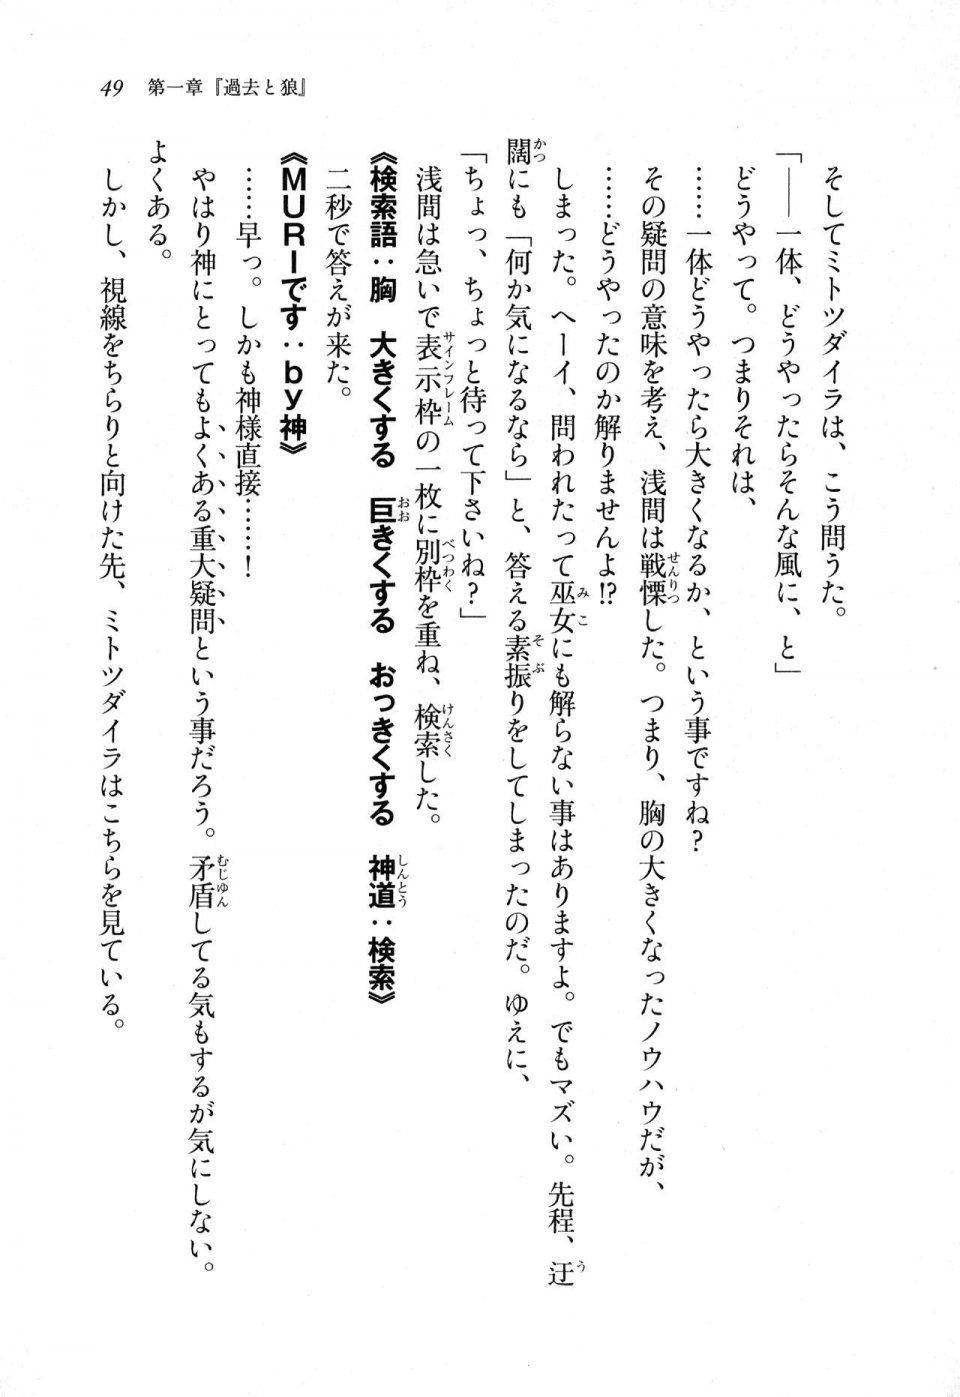 Kyoukai Senjou no Horizon LN Sidestory Vol 1 - Photo #47